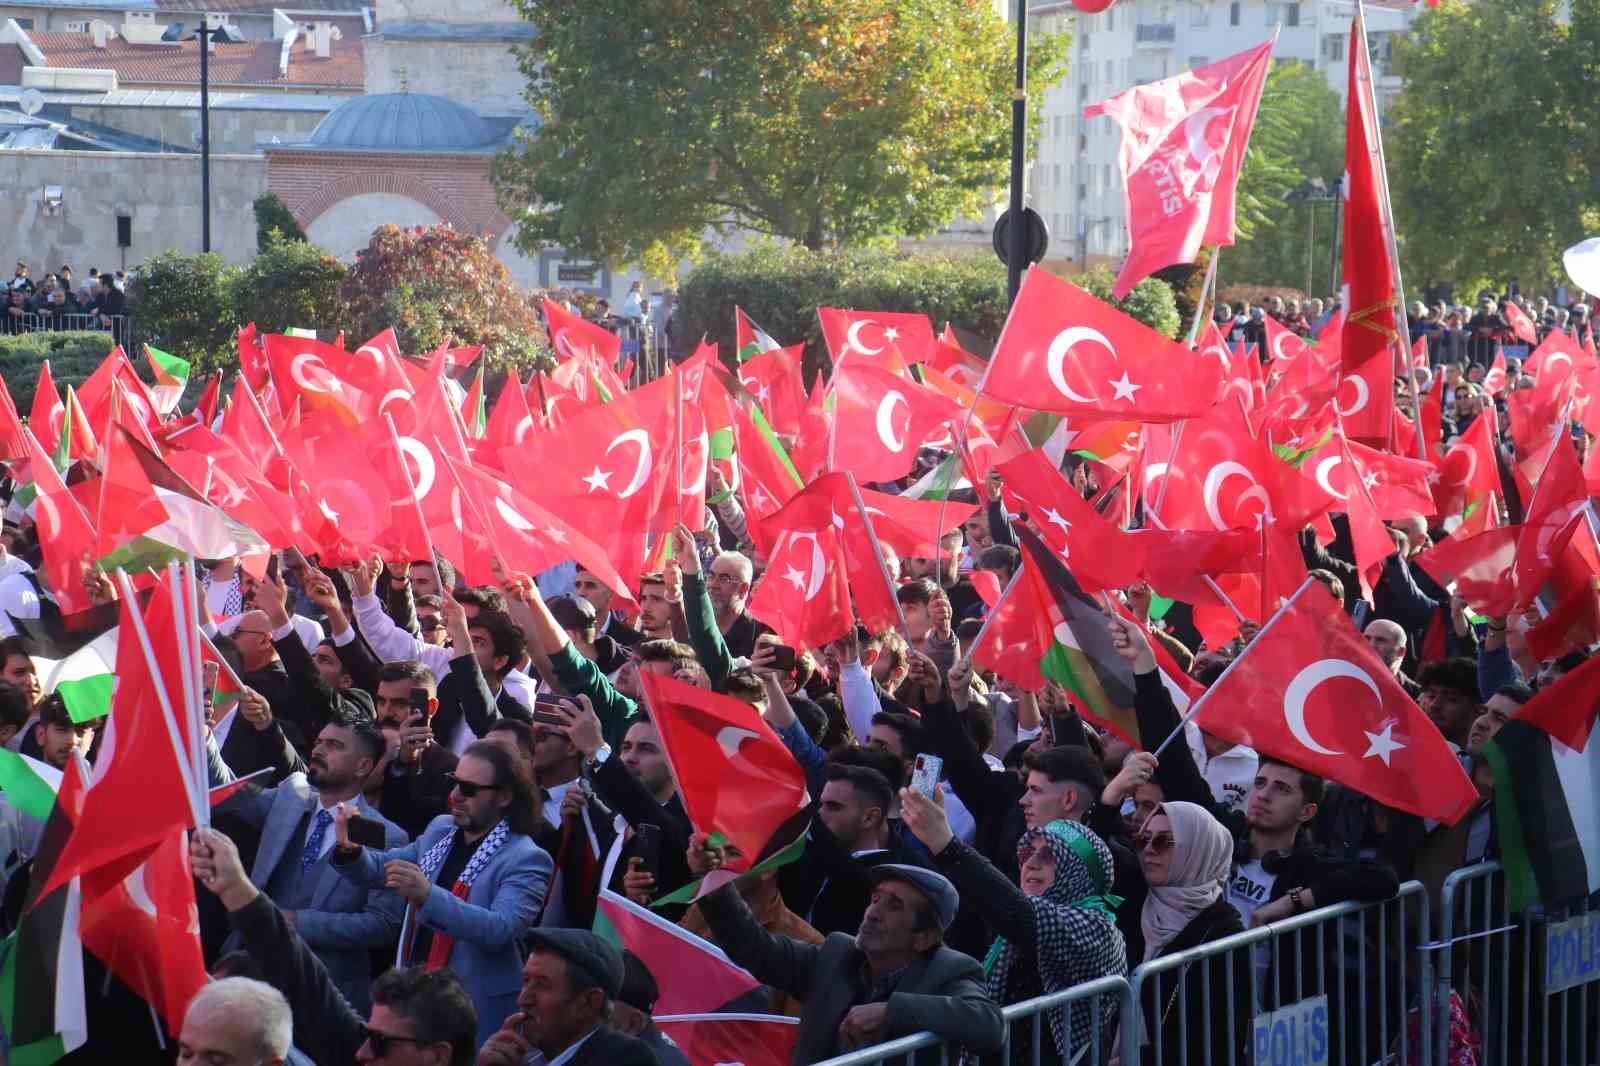 Destici’den CHP kongresi yorumu: “Gelen de, giden de teröriste selam çakıyor, gelenin de gidenden bir farkı yok”